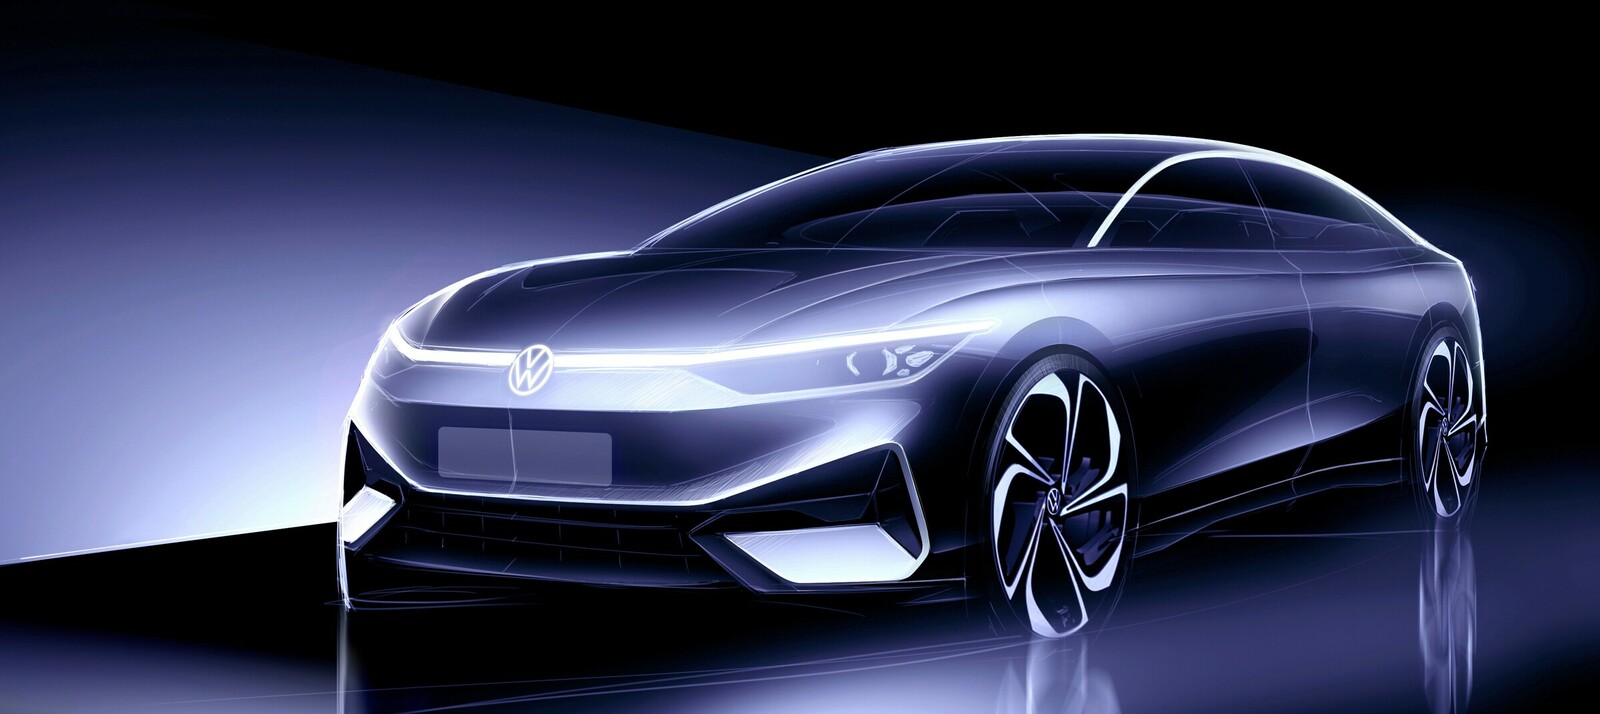 Vor der offiziellen Enthüllung präsentiert Volkswagen Designskizzen des ID.Aero.